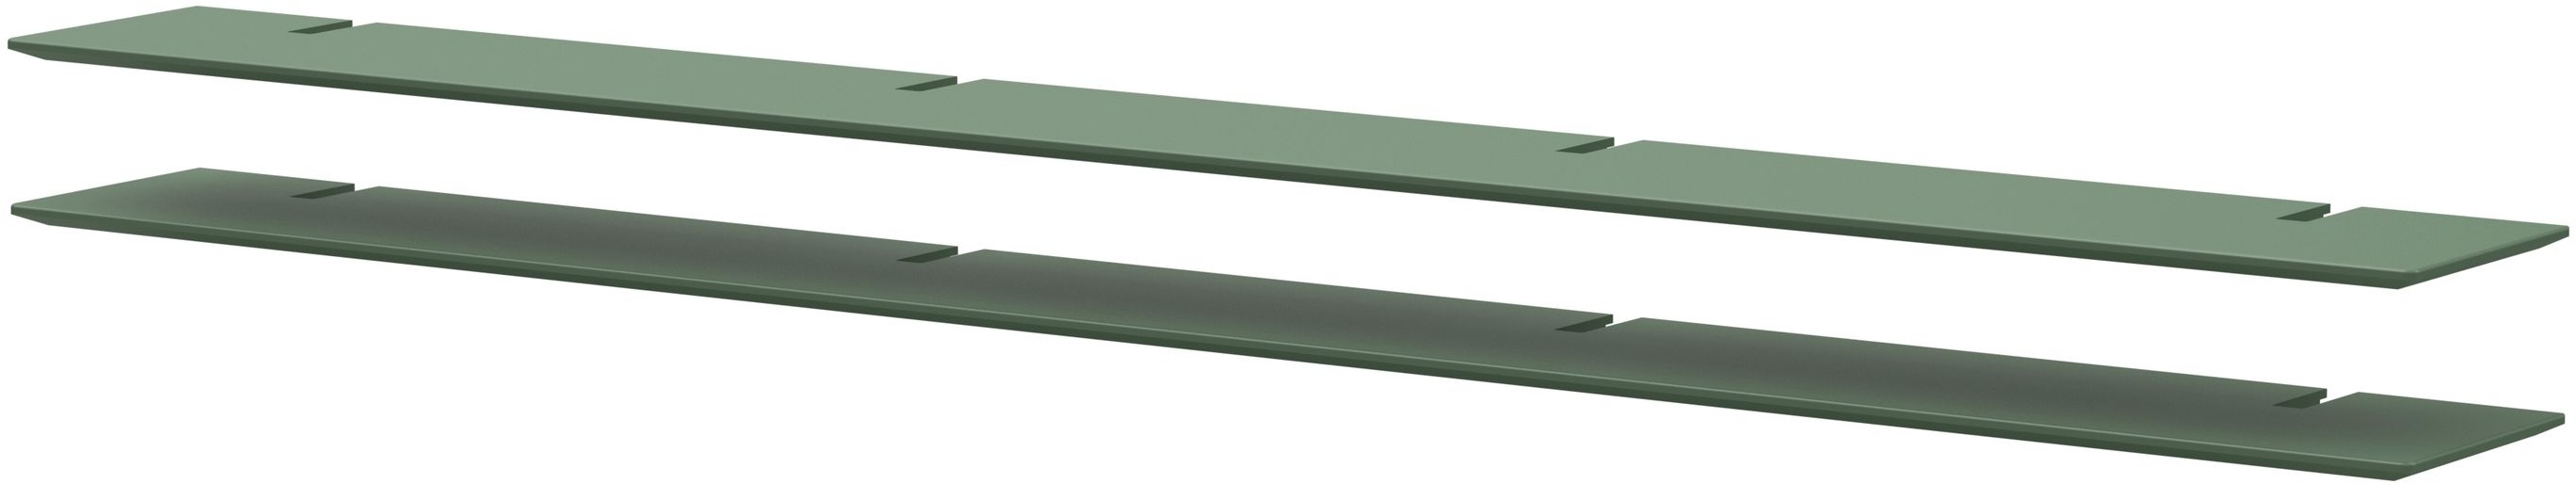 Regalböden BRIDGE (BHT 224x2x25 cm) - grün